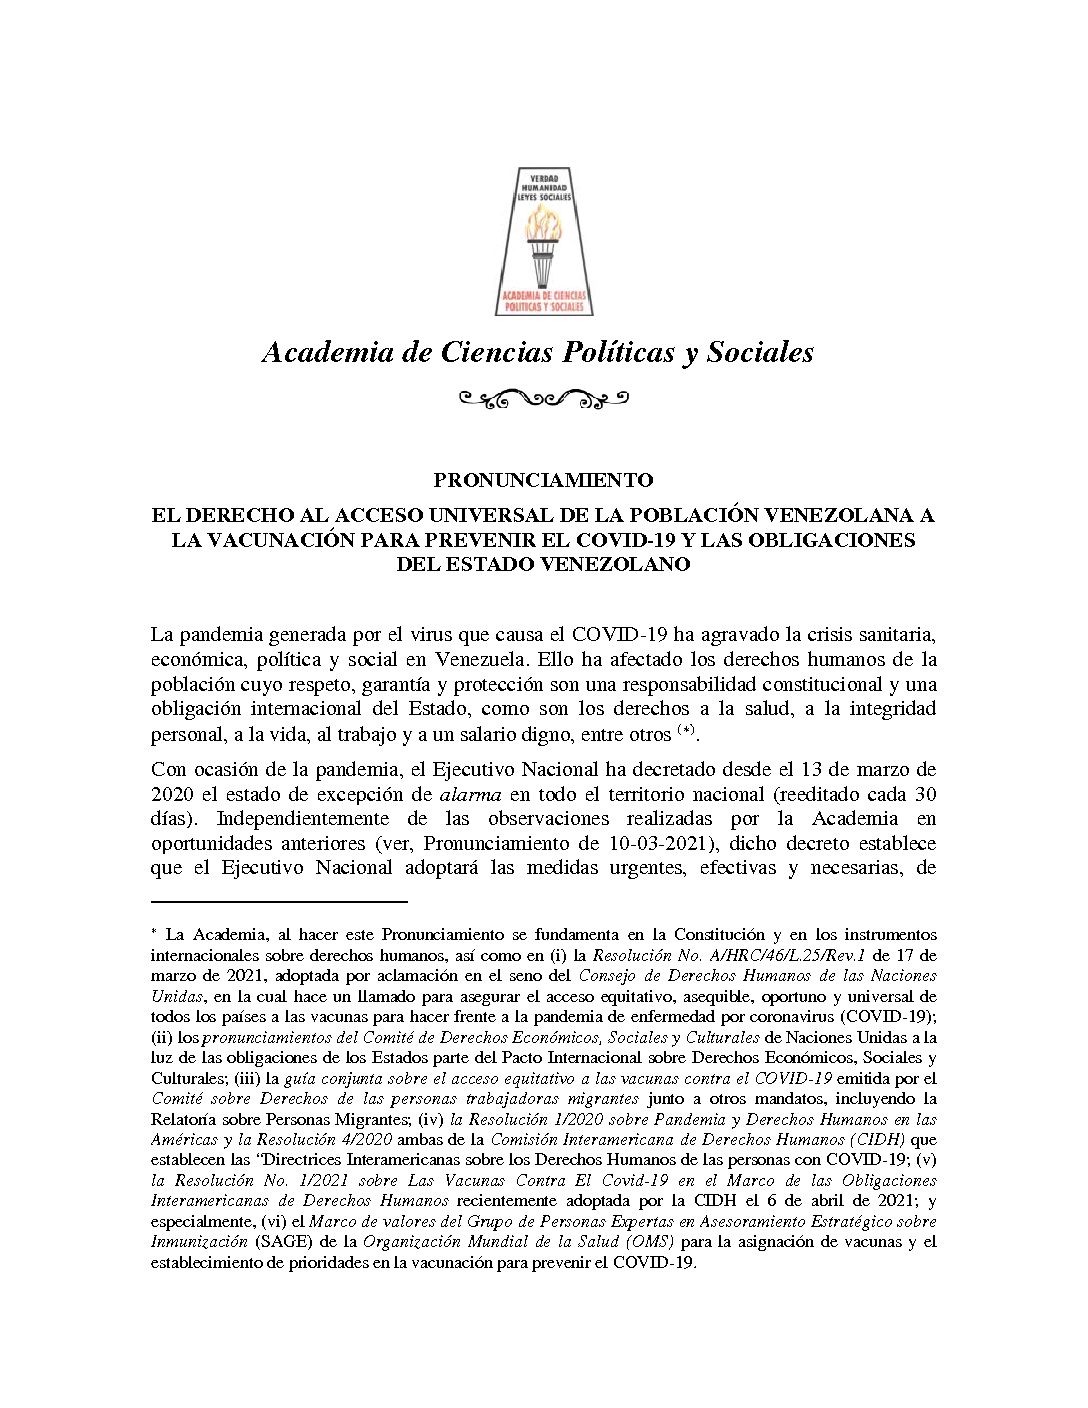 Pronunciamiento de la Academia de Ciencias Políticas y Sociales ante el derecho al acceso universal de la población venezolana a la vacunación para prevenir el Covid-19 y las obligaciones del Estado venezolano